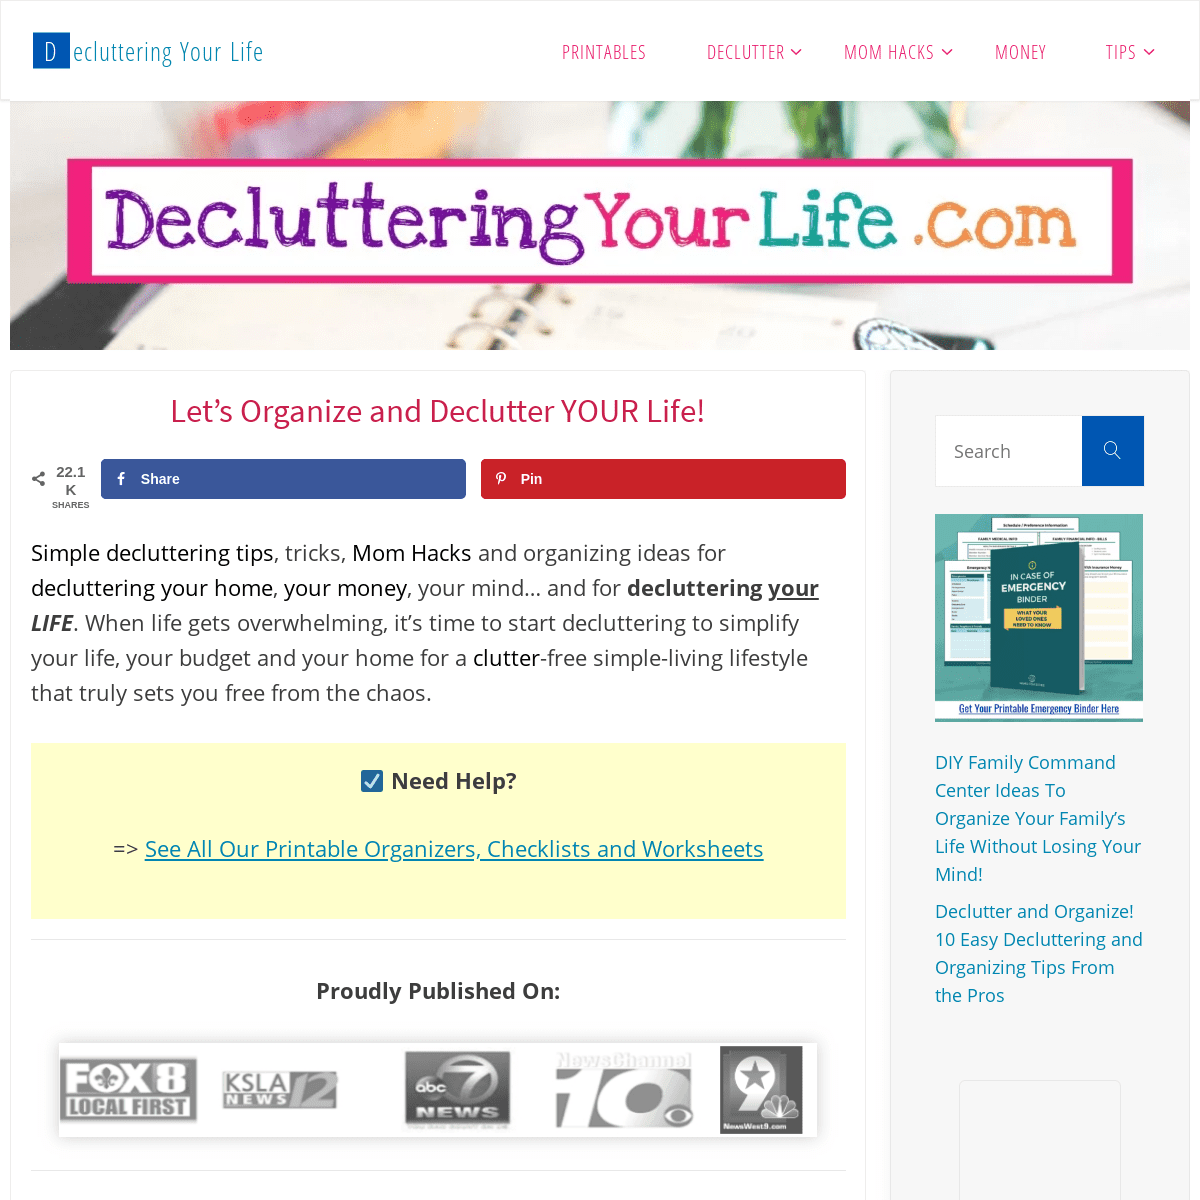 A complete backup of declutteringyourlife.com